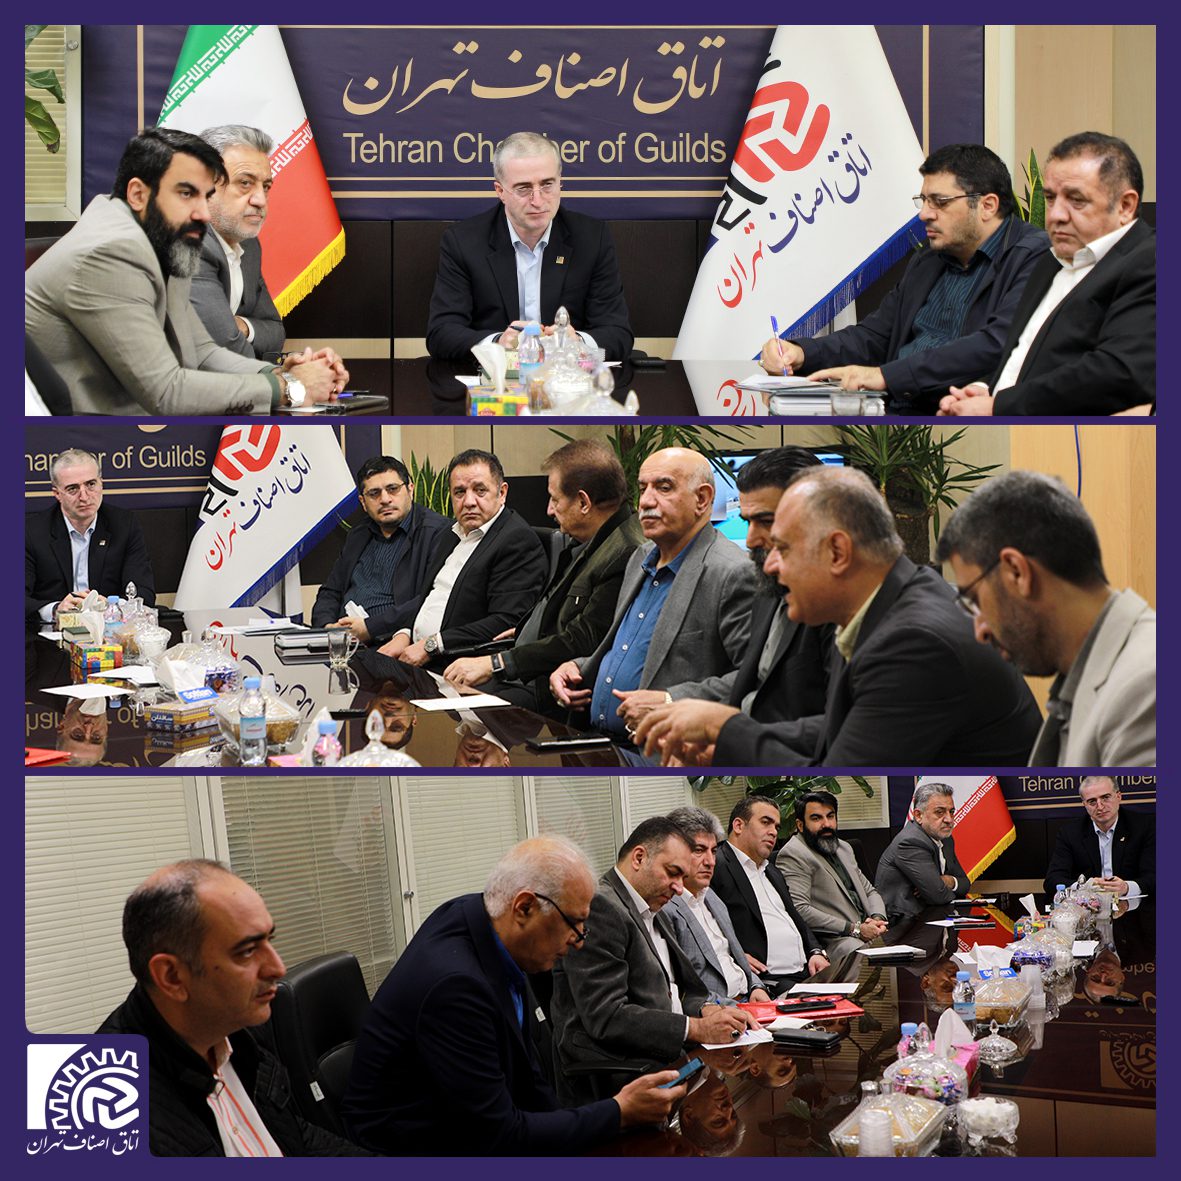 نشست تخصصی هیئت رئیسه و اعضای کمیسیون تلفیق اتاق اصناف تهران با رئیس مرکز بهبود محیط کسب و کار